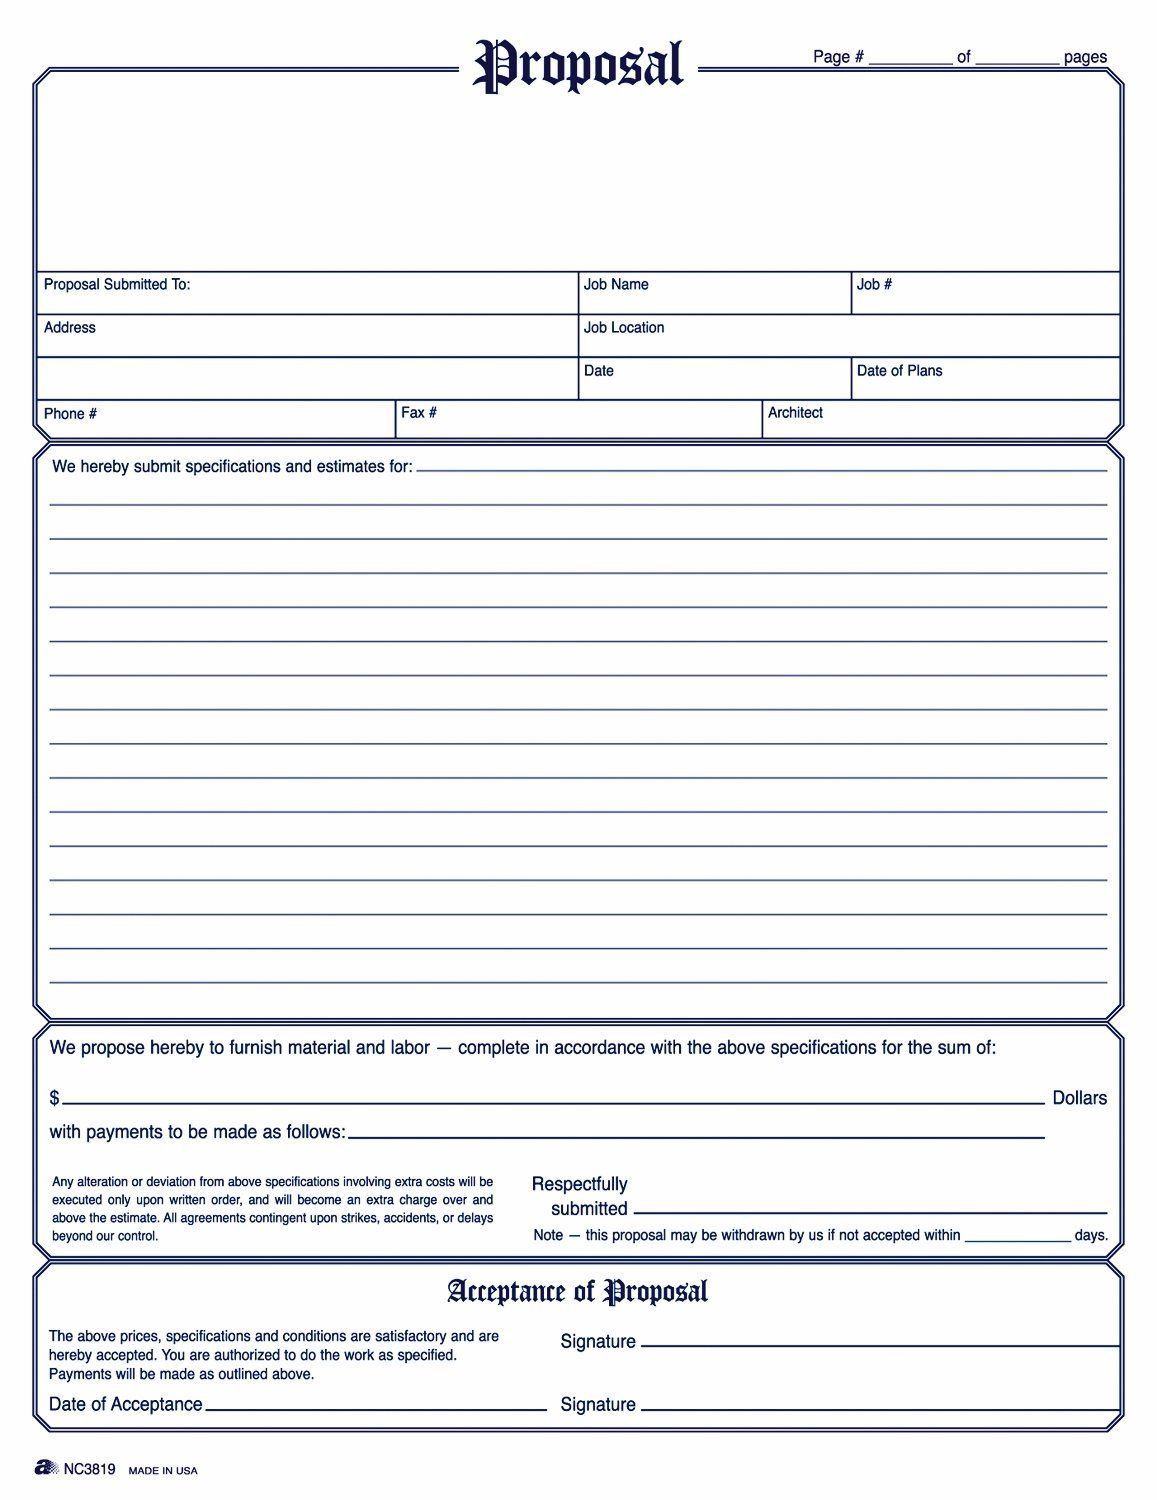 Free Contractor Estimate Forms - Contractor Estimate Form - Free Printable Contractor Proposal Forms